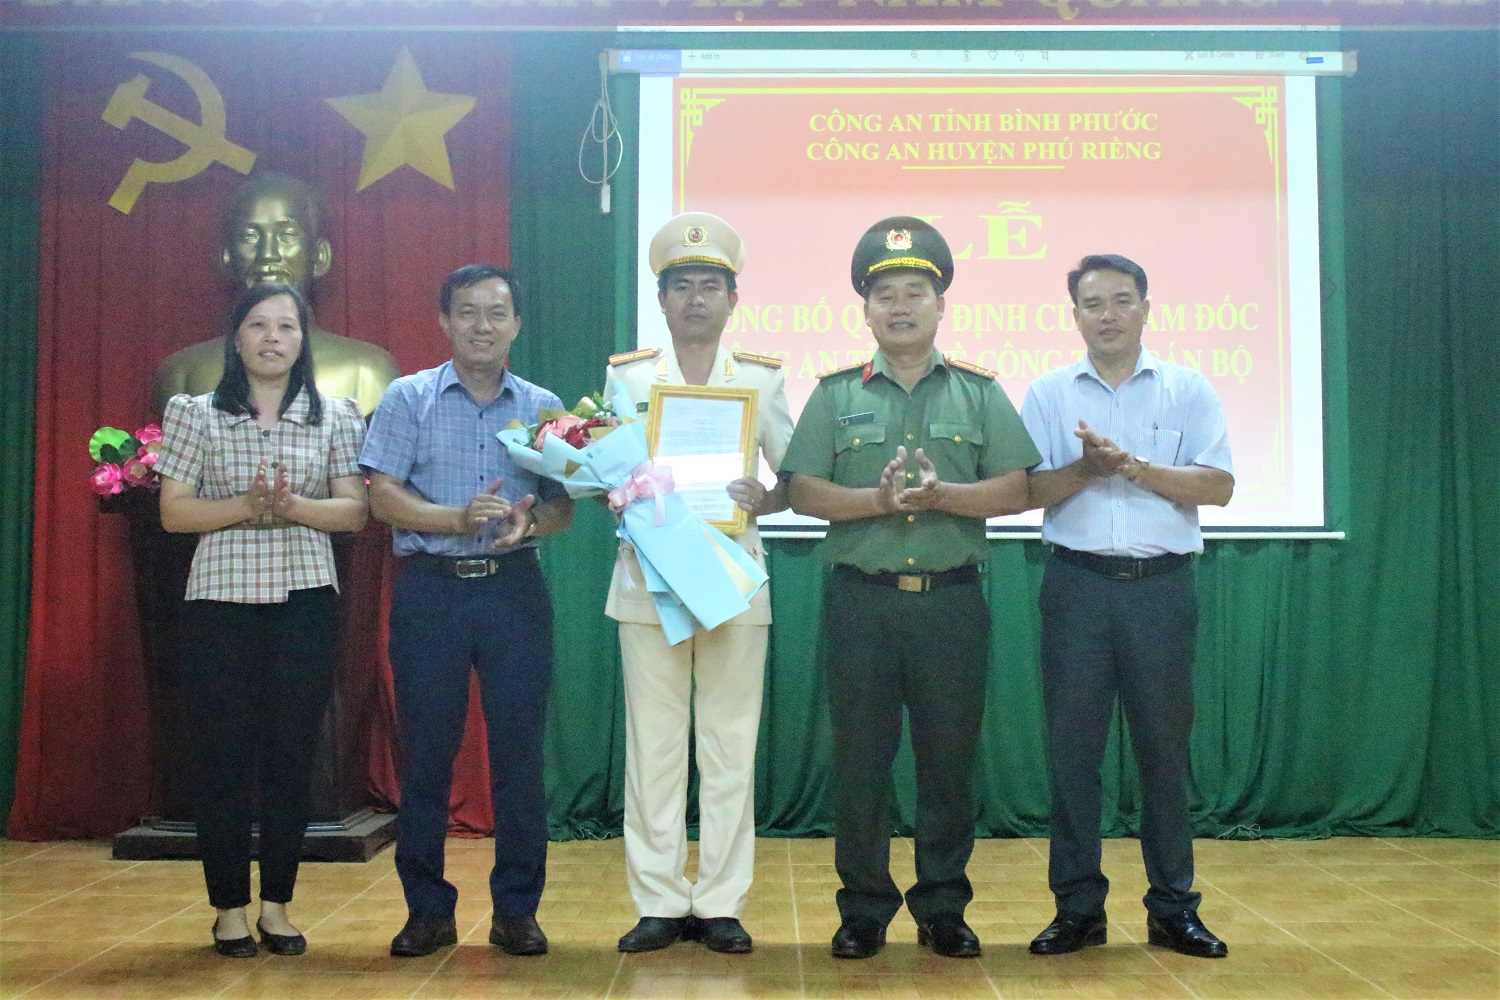 Thiếu tá Hà Văn Tuấn được điều động giữ chức Trưởng Công an xã Phú Riềng.